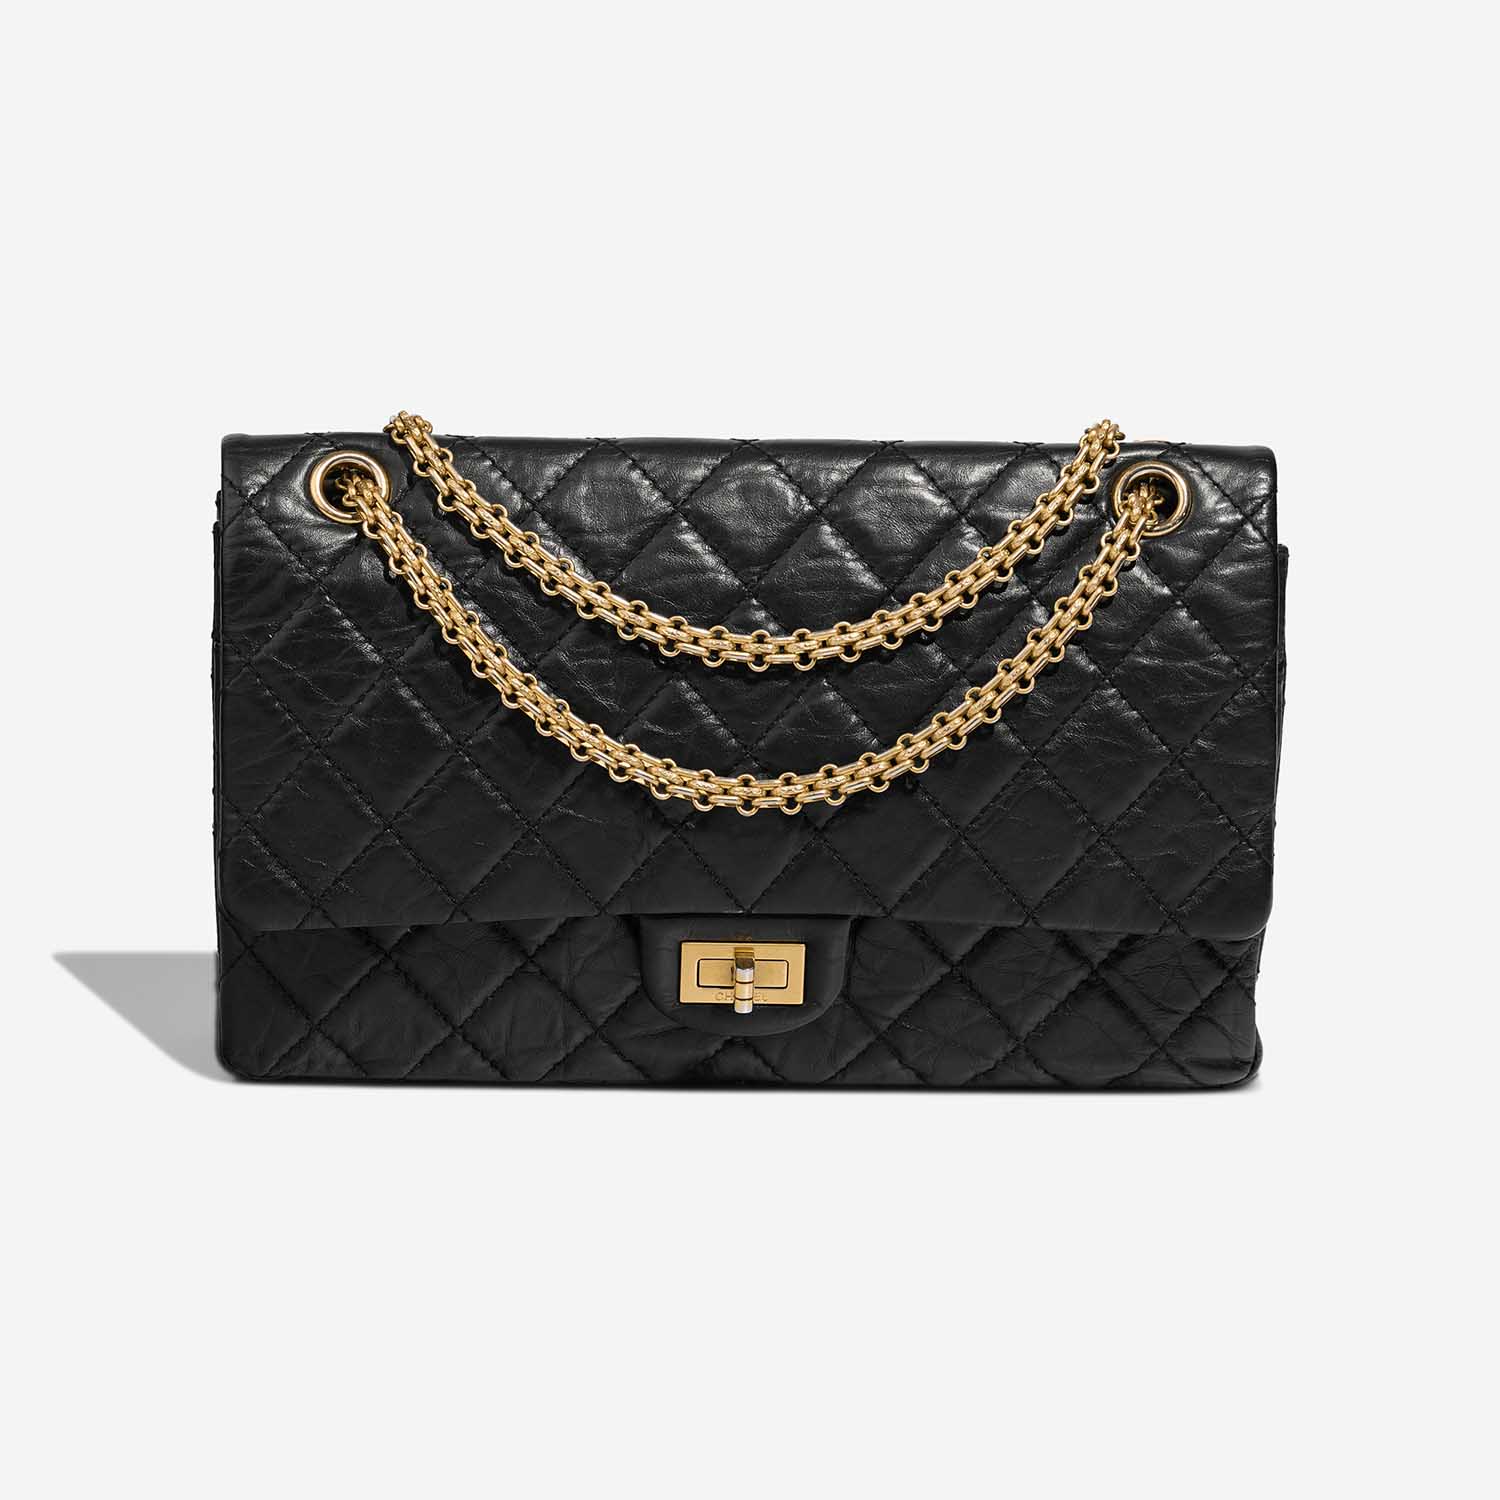 Chanel 255 226 Black Front S | Verkaufen Sie Ihre Designer-Tasche auf Saclab.com